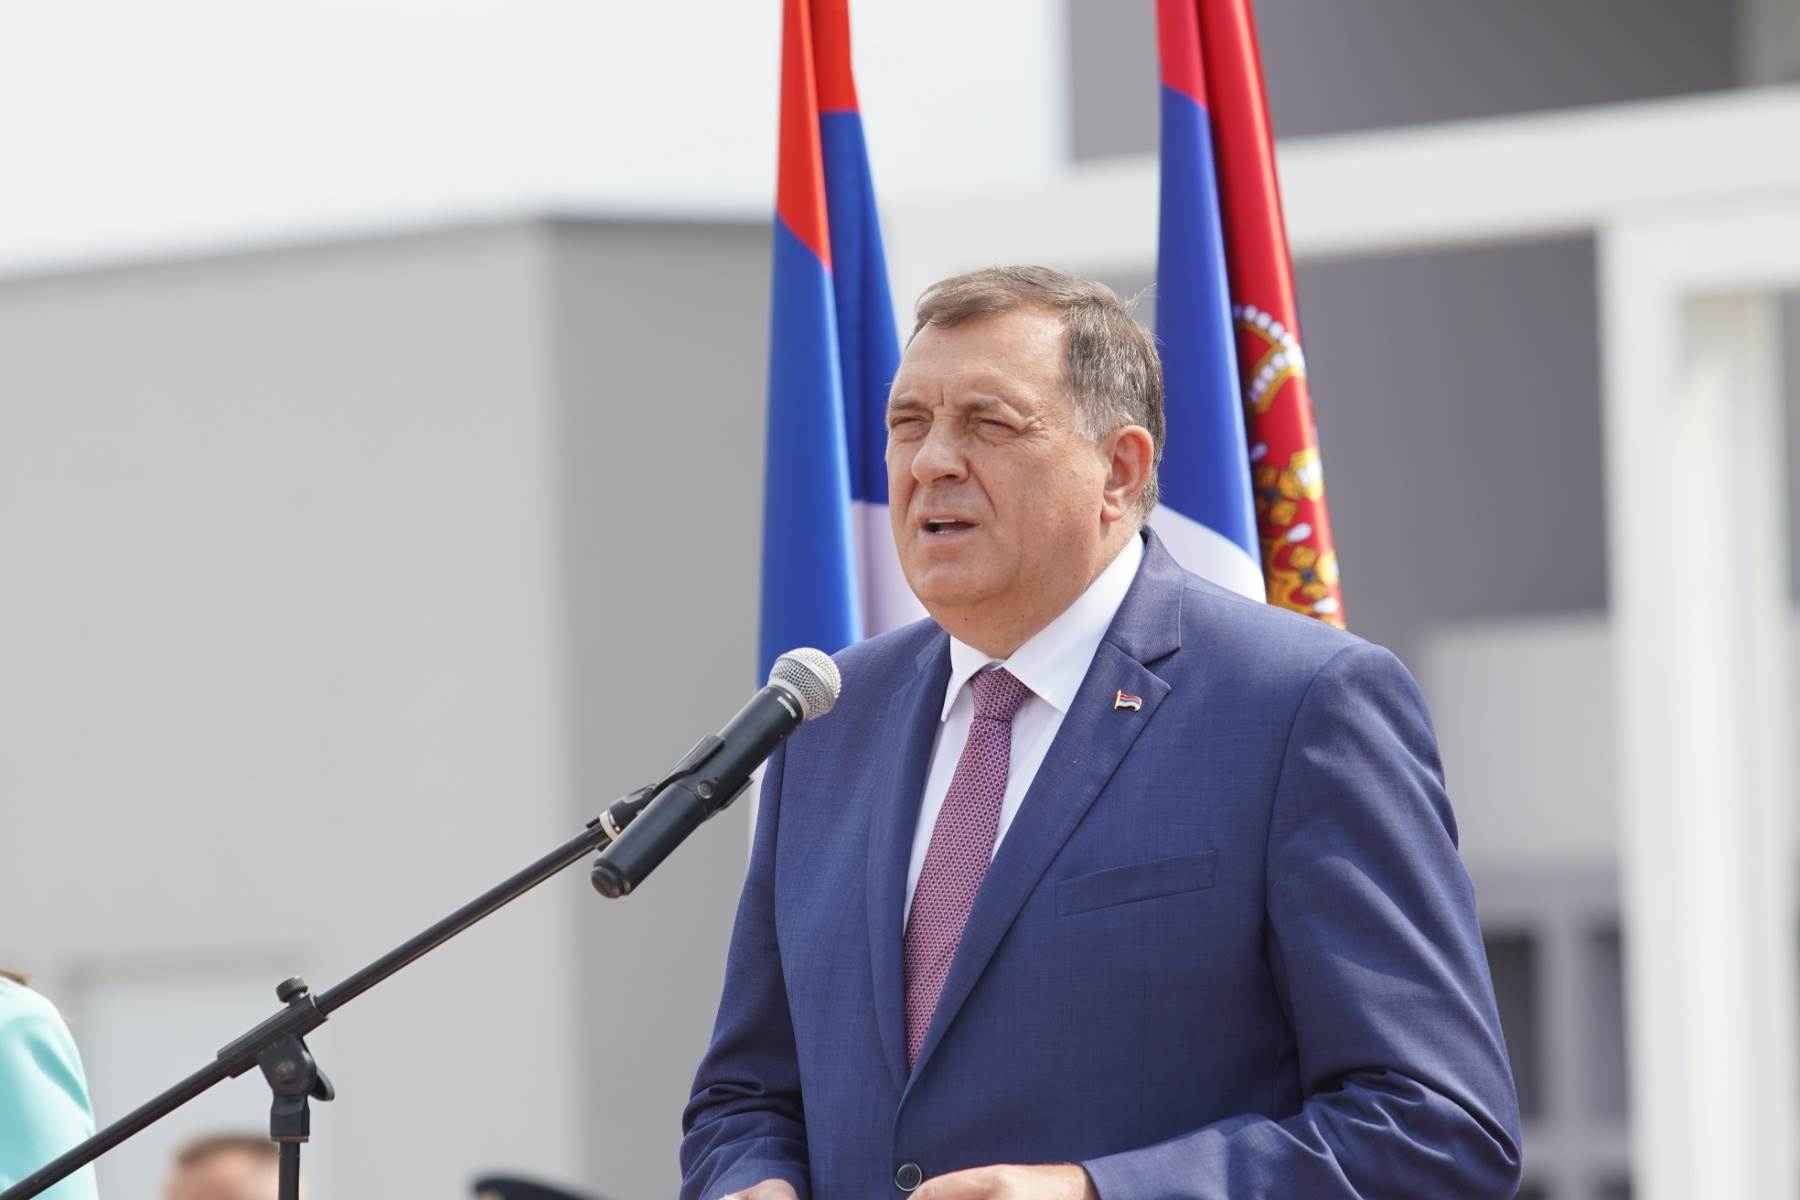  Dodik: Mržnja prema Srbima konstantno živi u Sarajevu 